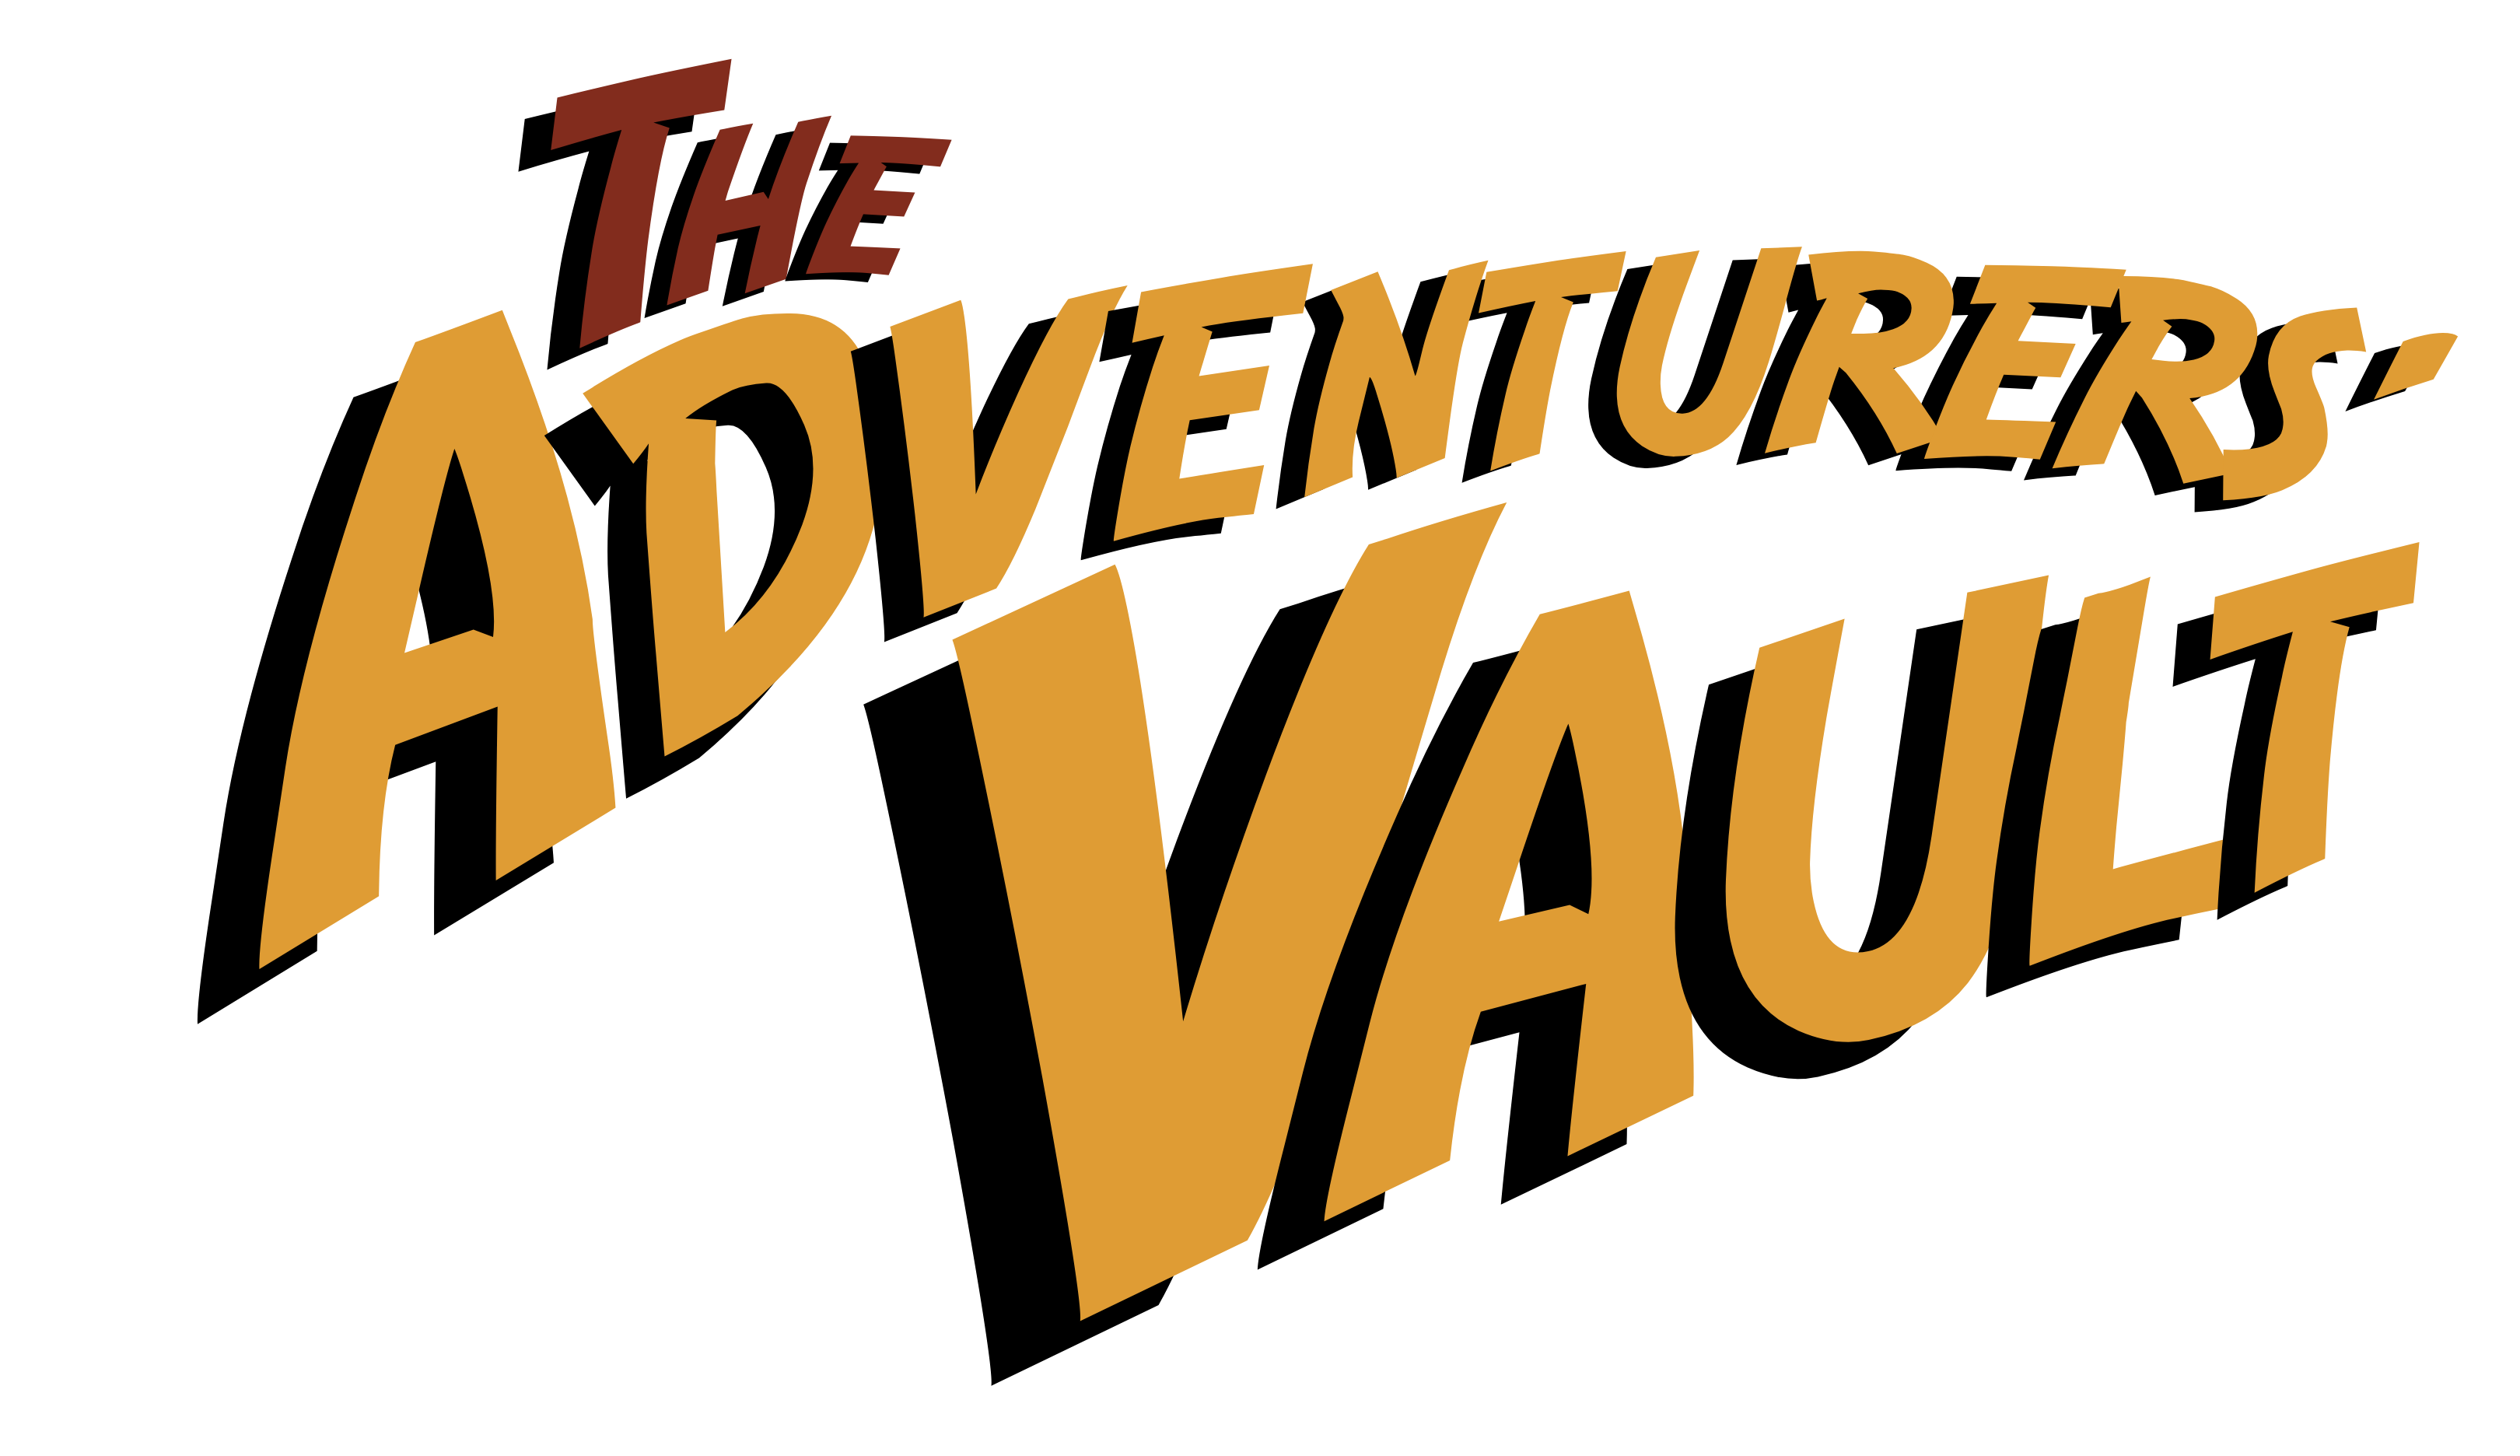 The Adventurers' Vault